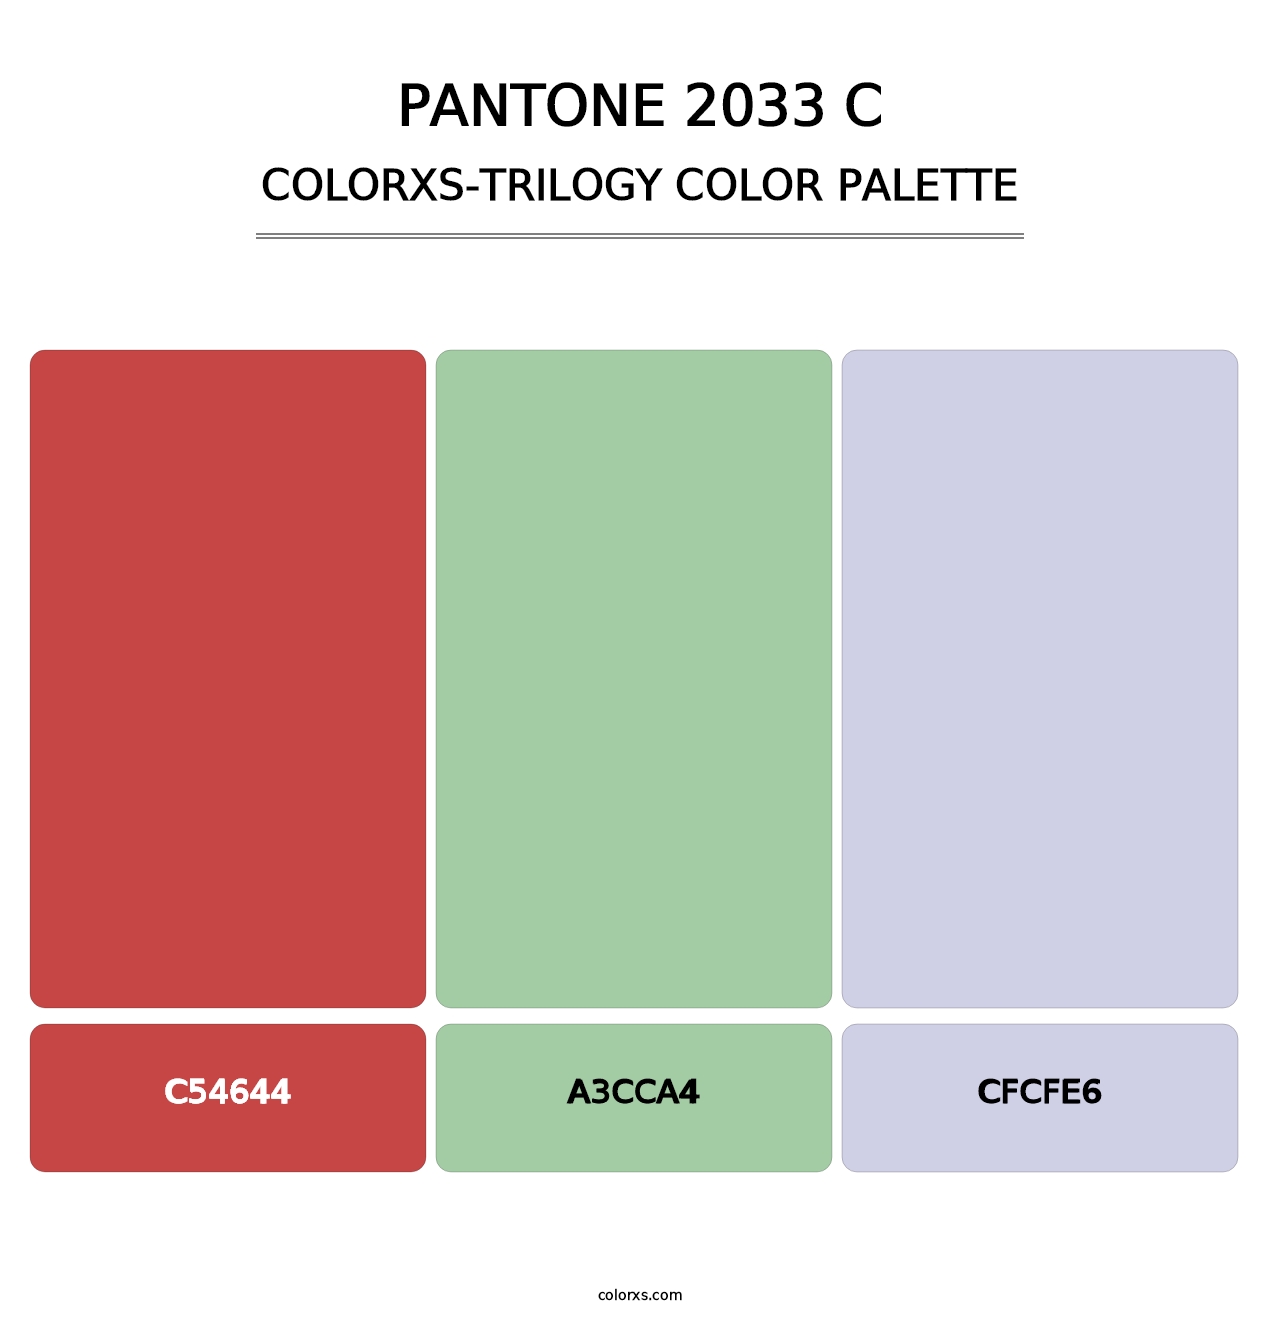 PANTONE 2033 C - Colorxs Trilogy Palette